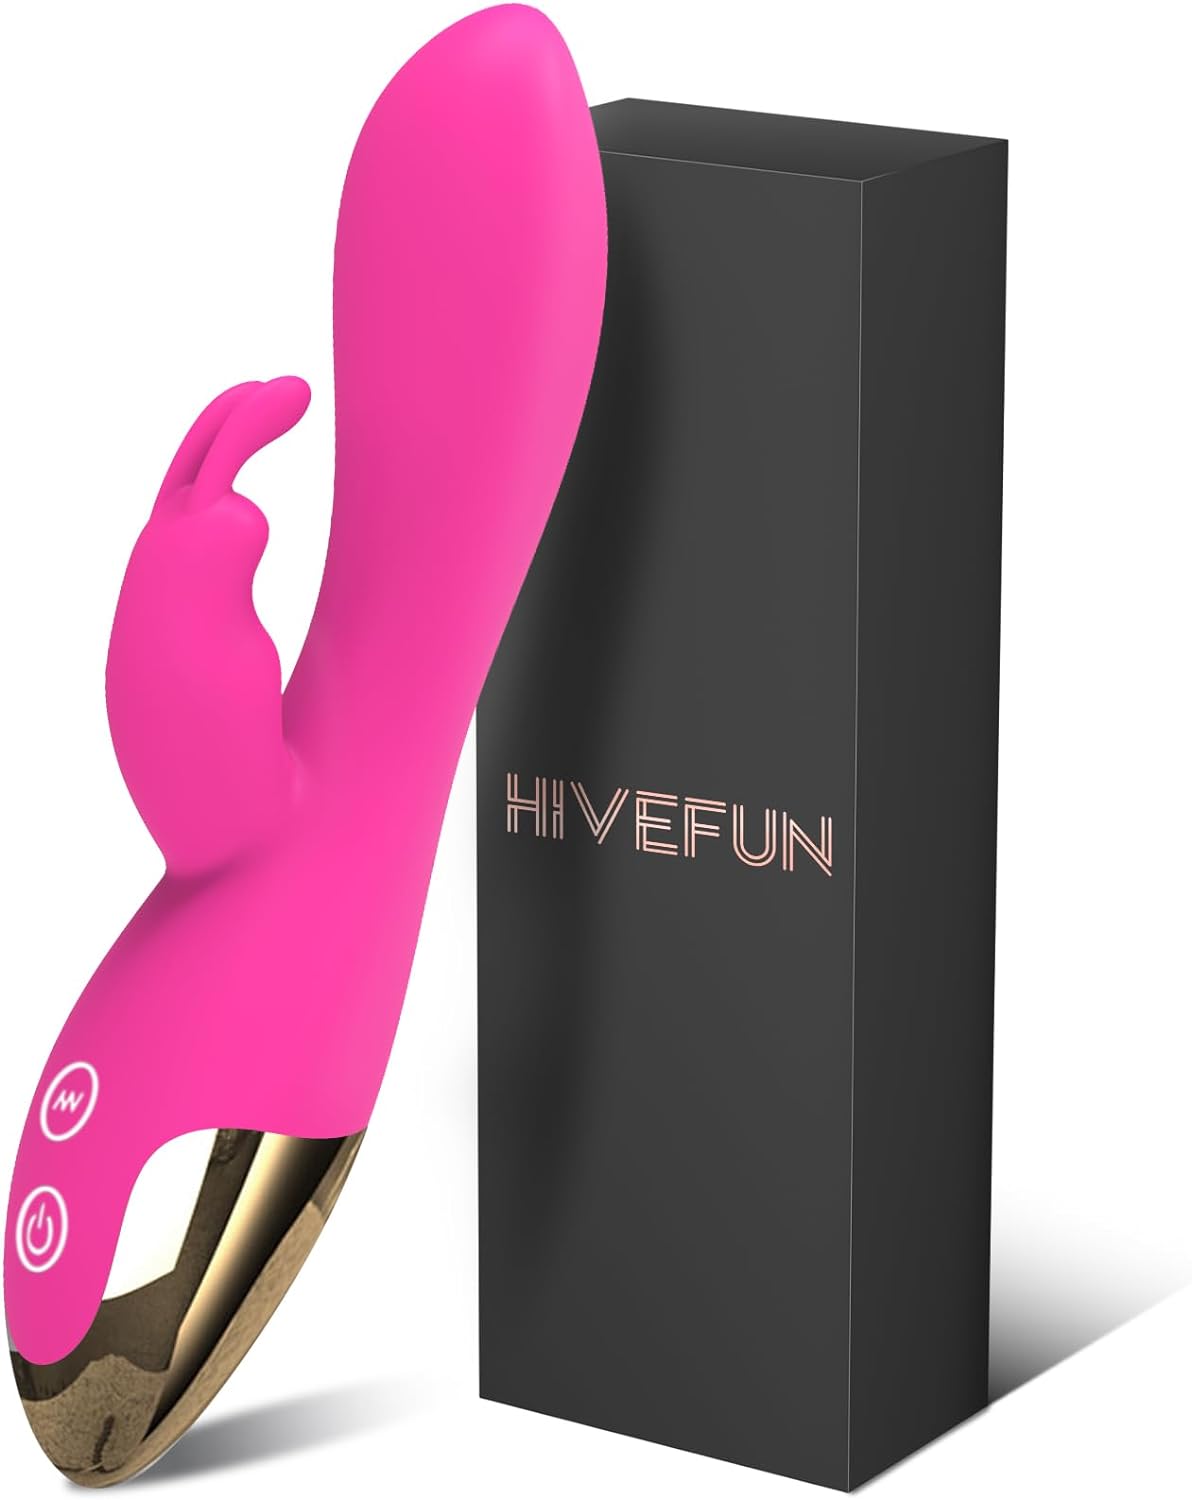 Conejito rampante de marca hivefun de color rosa.